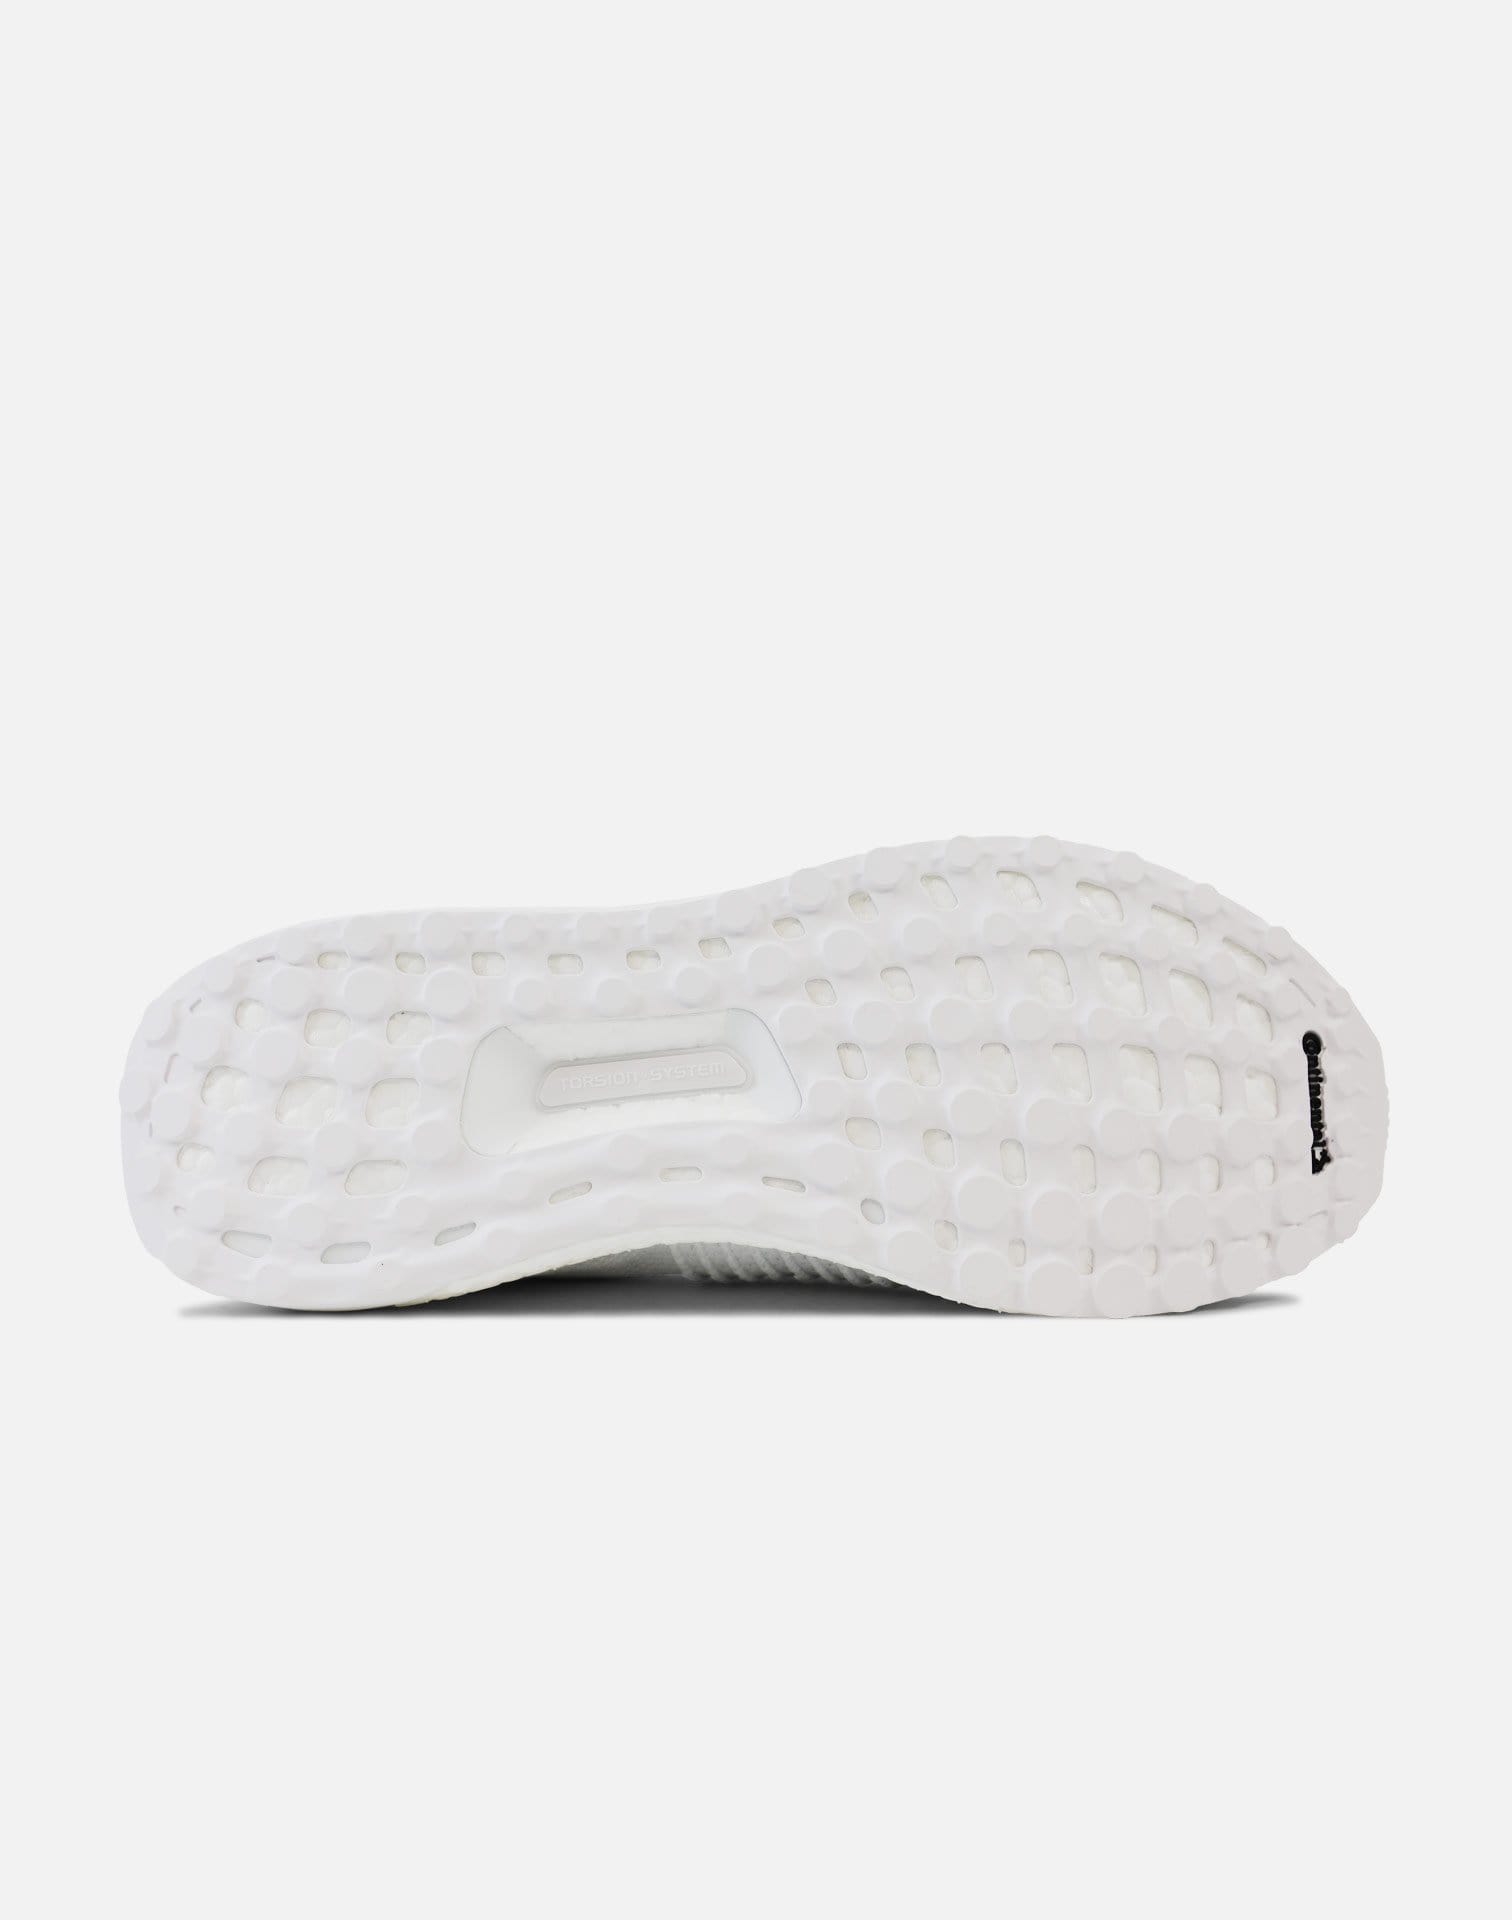 adidas Ultraboost Laceless (Footwear White/Talc)